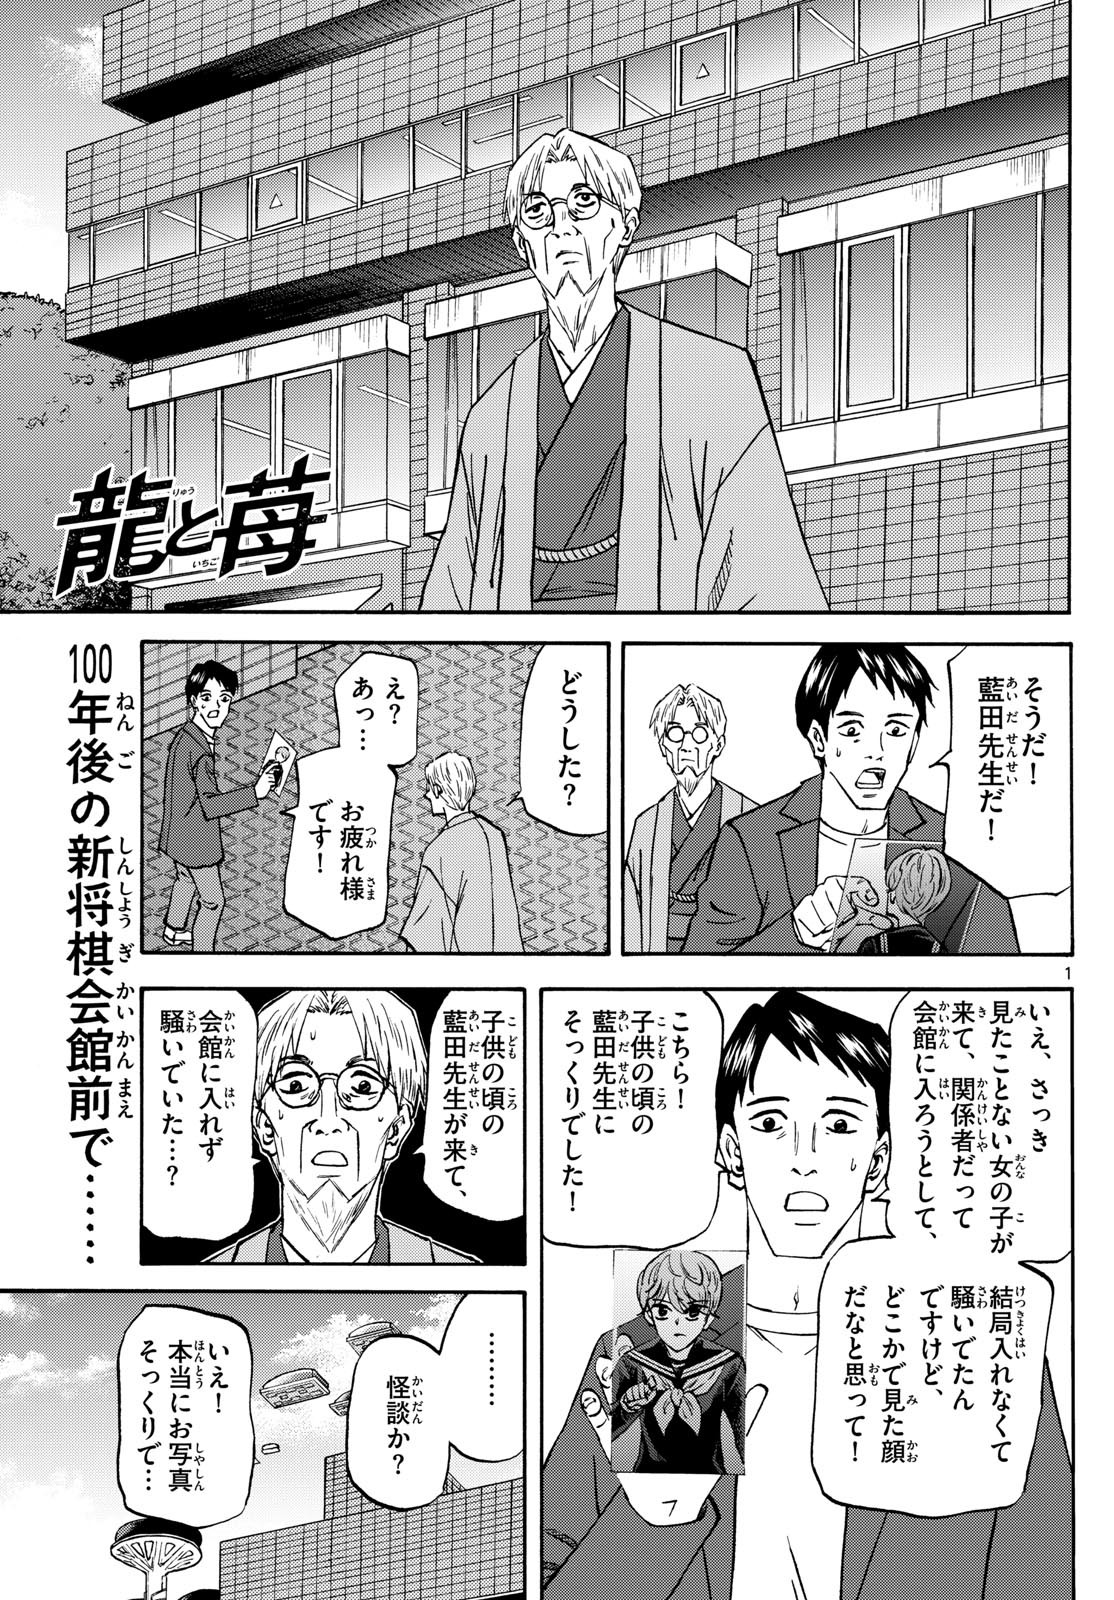 Ryu-to-Ichigo - Chapter 183 - Page 1